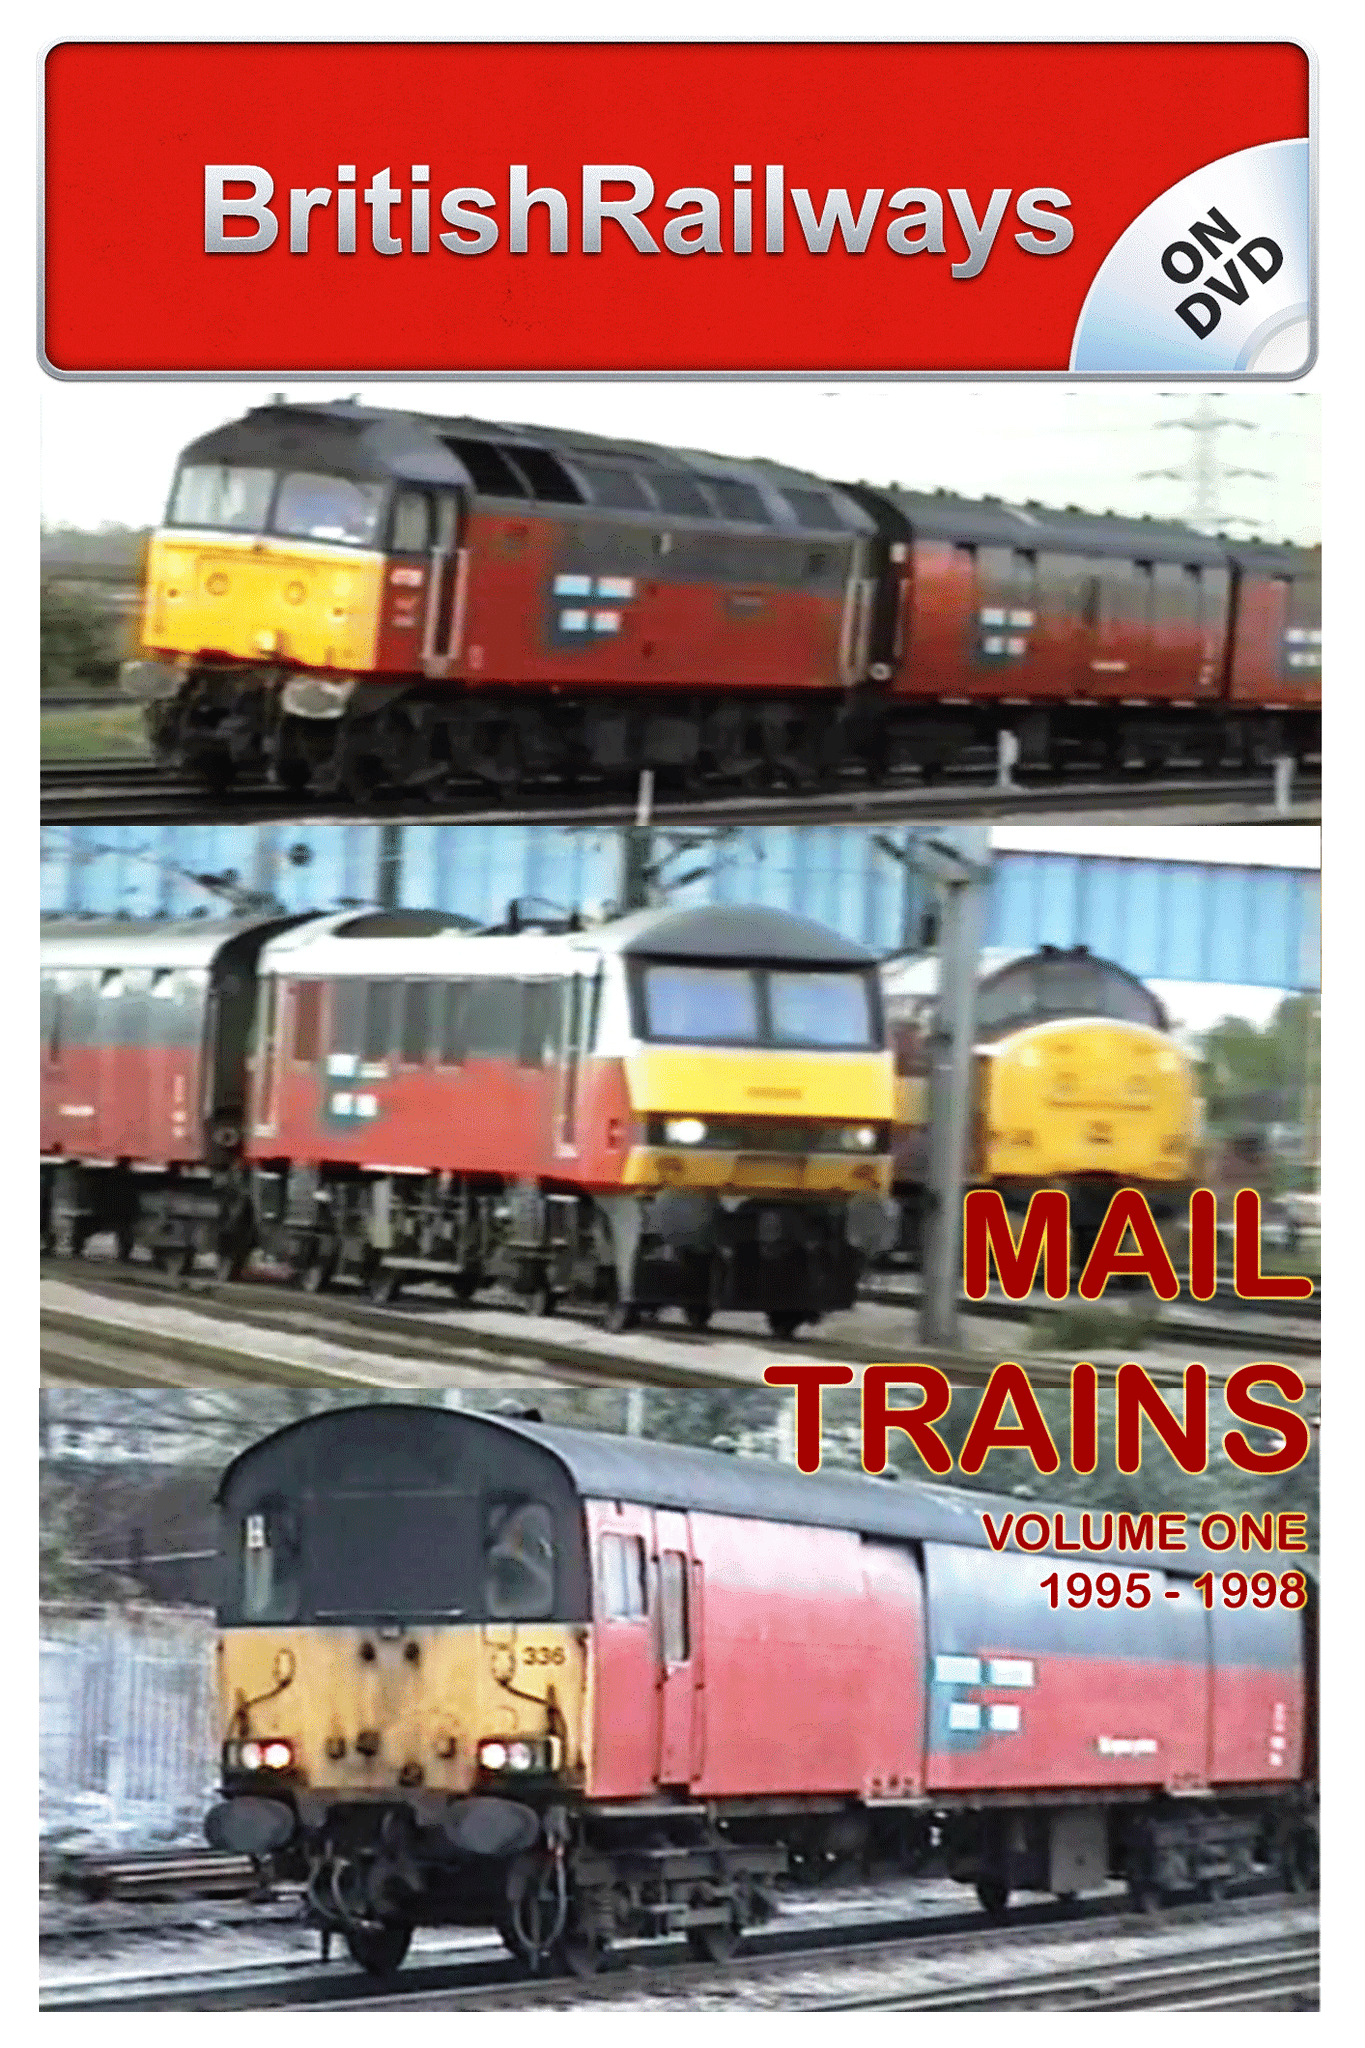 Mail Trains Volume One (1995 - 1998) - Railway DVD